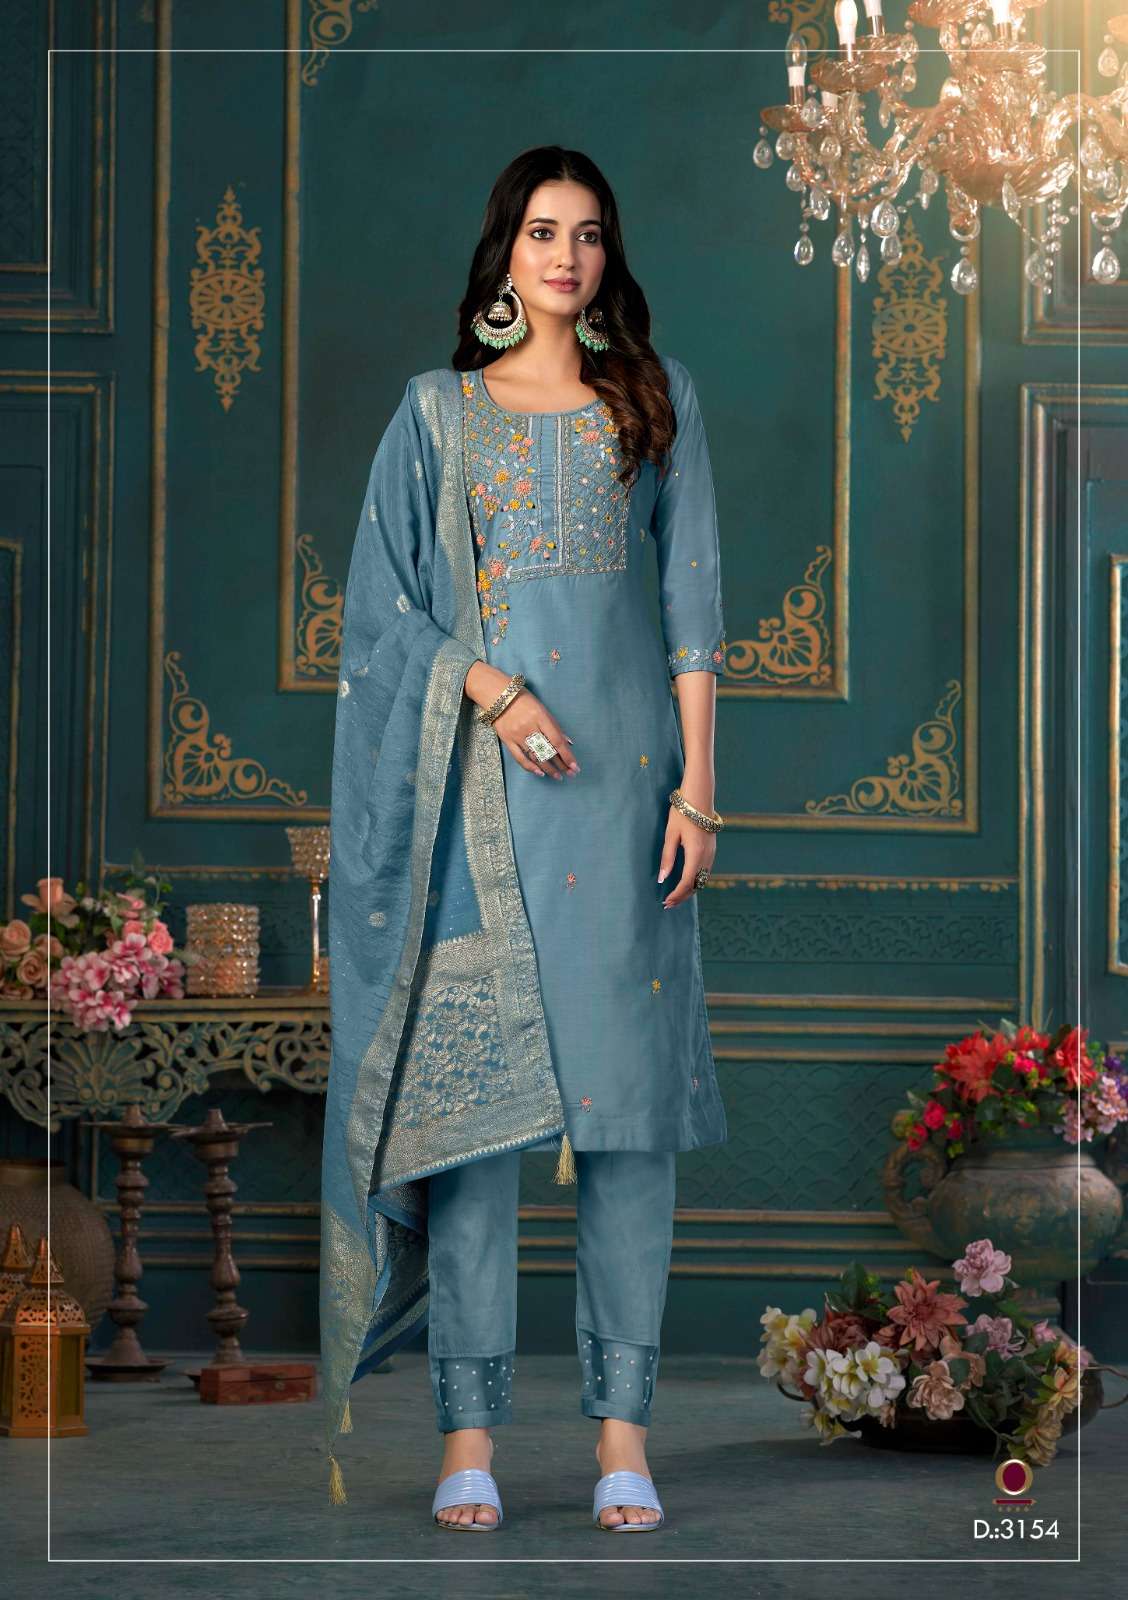 anju fabrics mayra vol-2 3151-3156 series silk designer party wear kurtis catalogue collection surat 